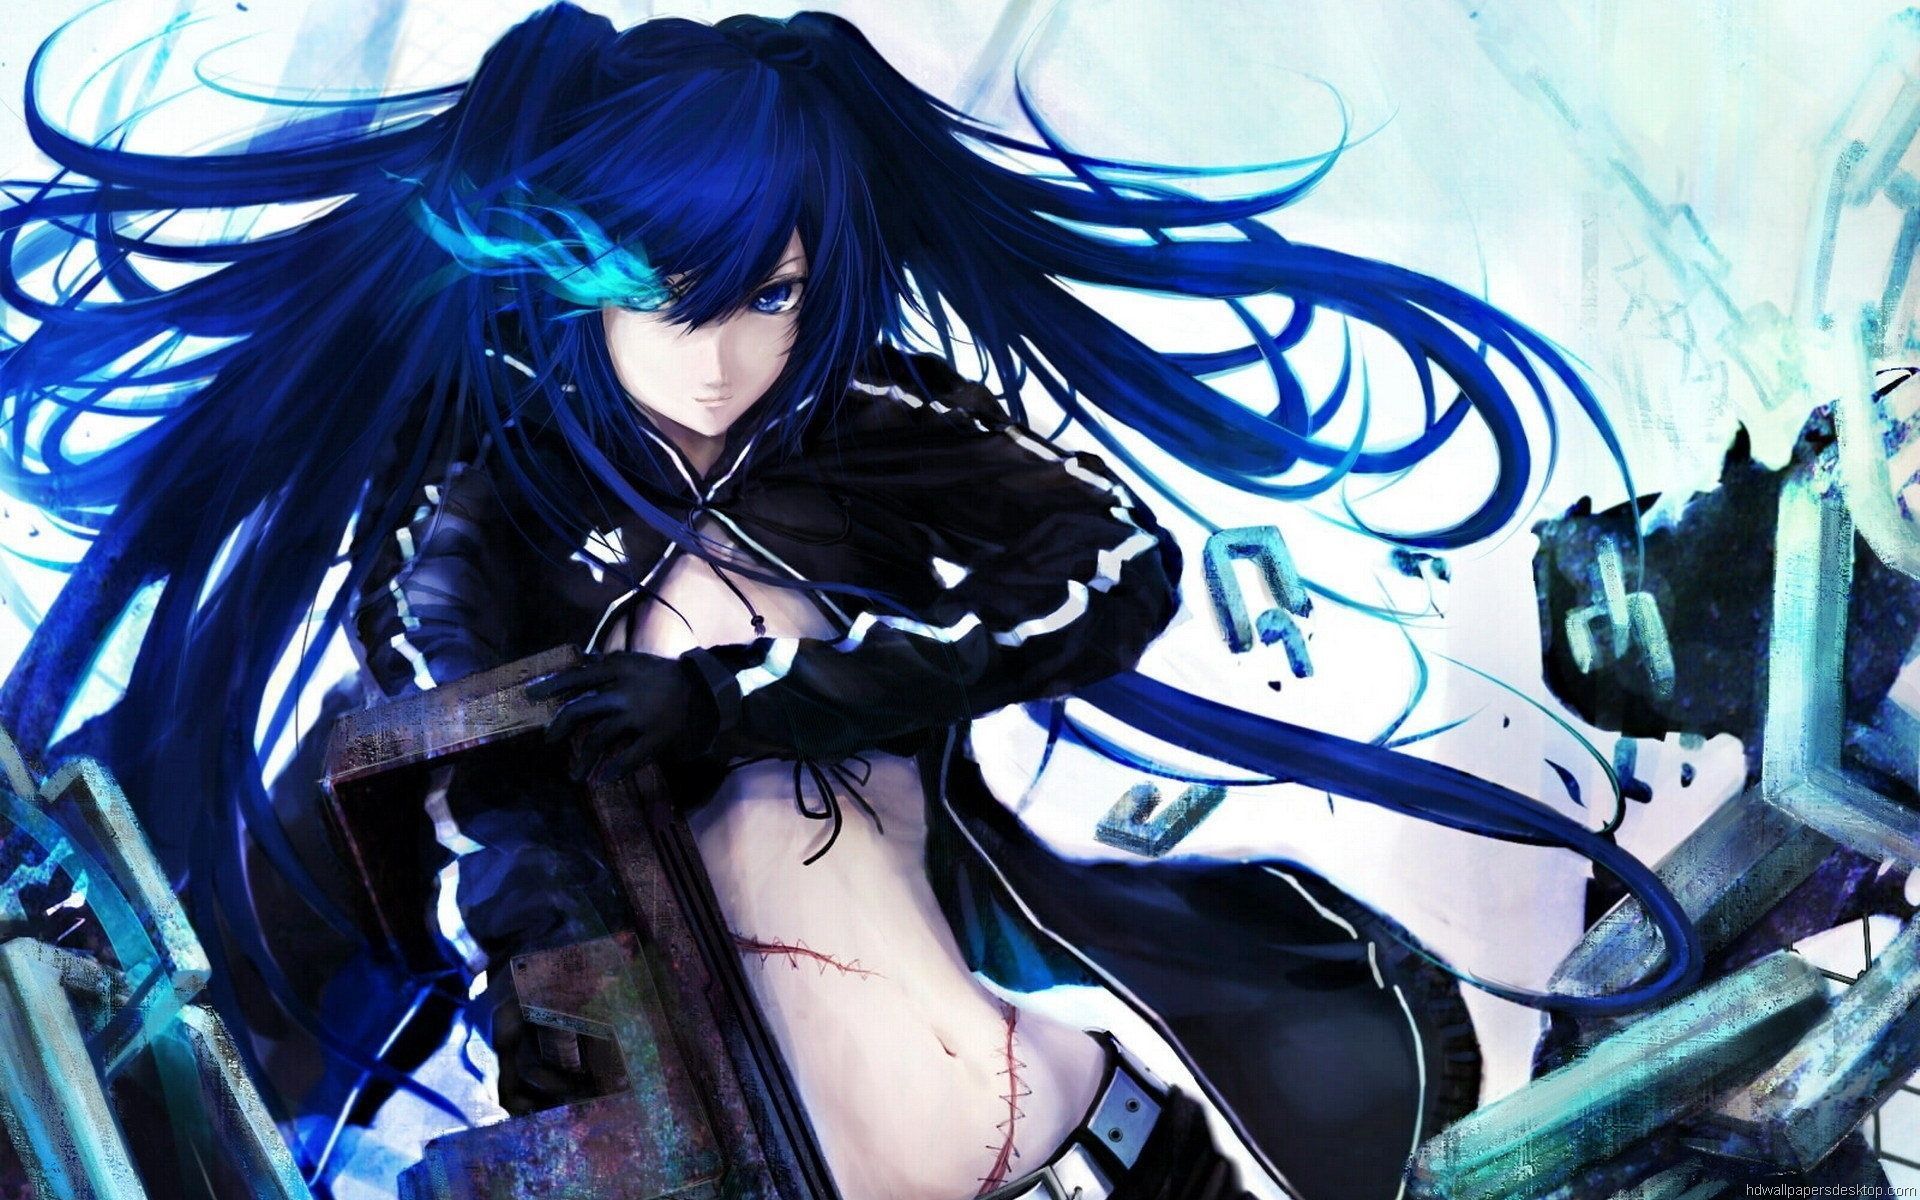 Hot Anime Wallpaper For Desktop Blue Hair Anime Girl Wallpaper & Background Download